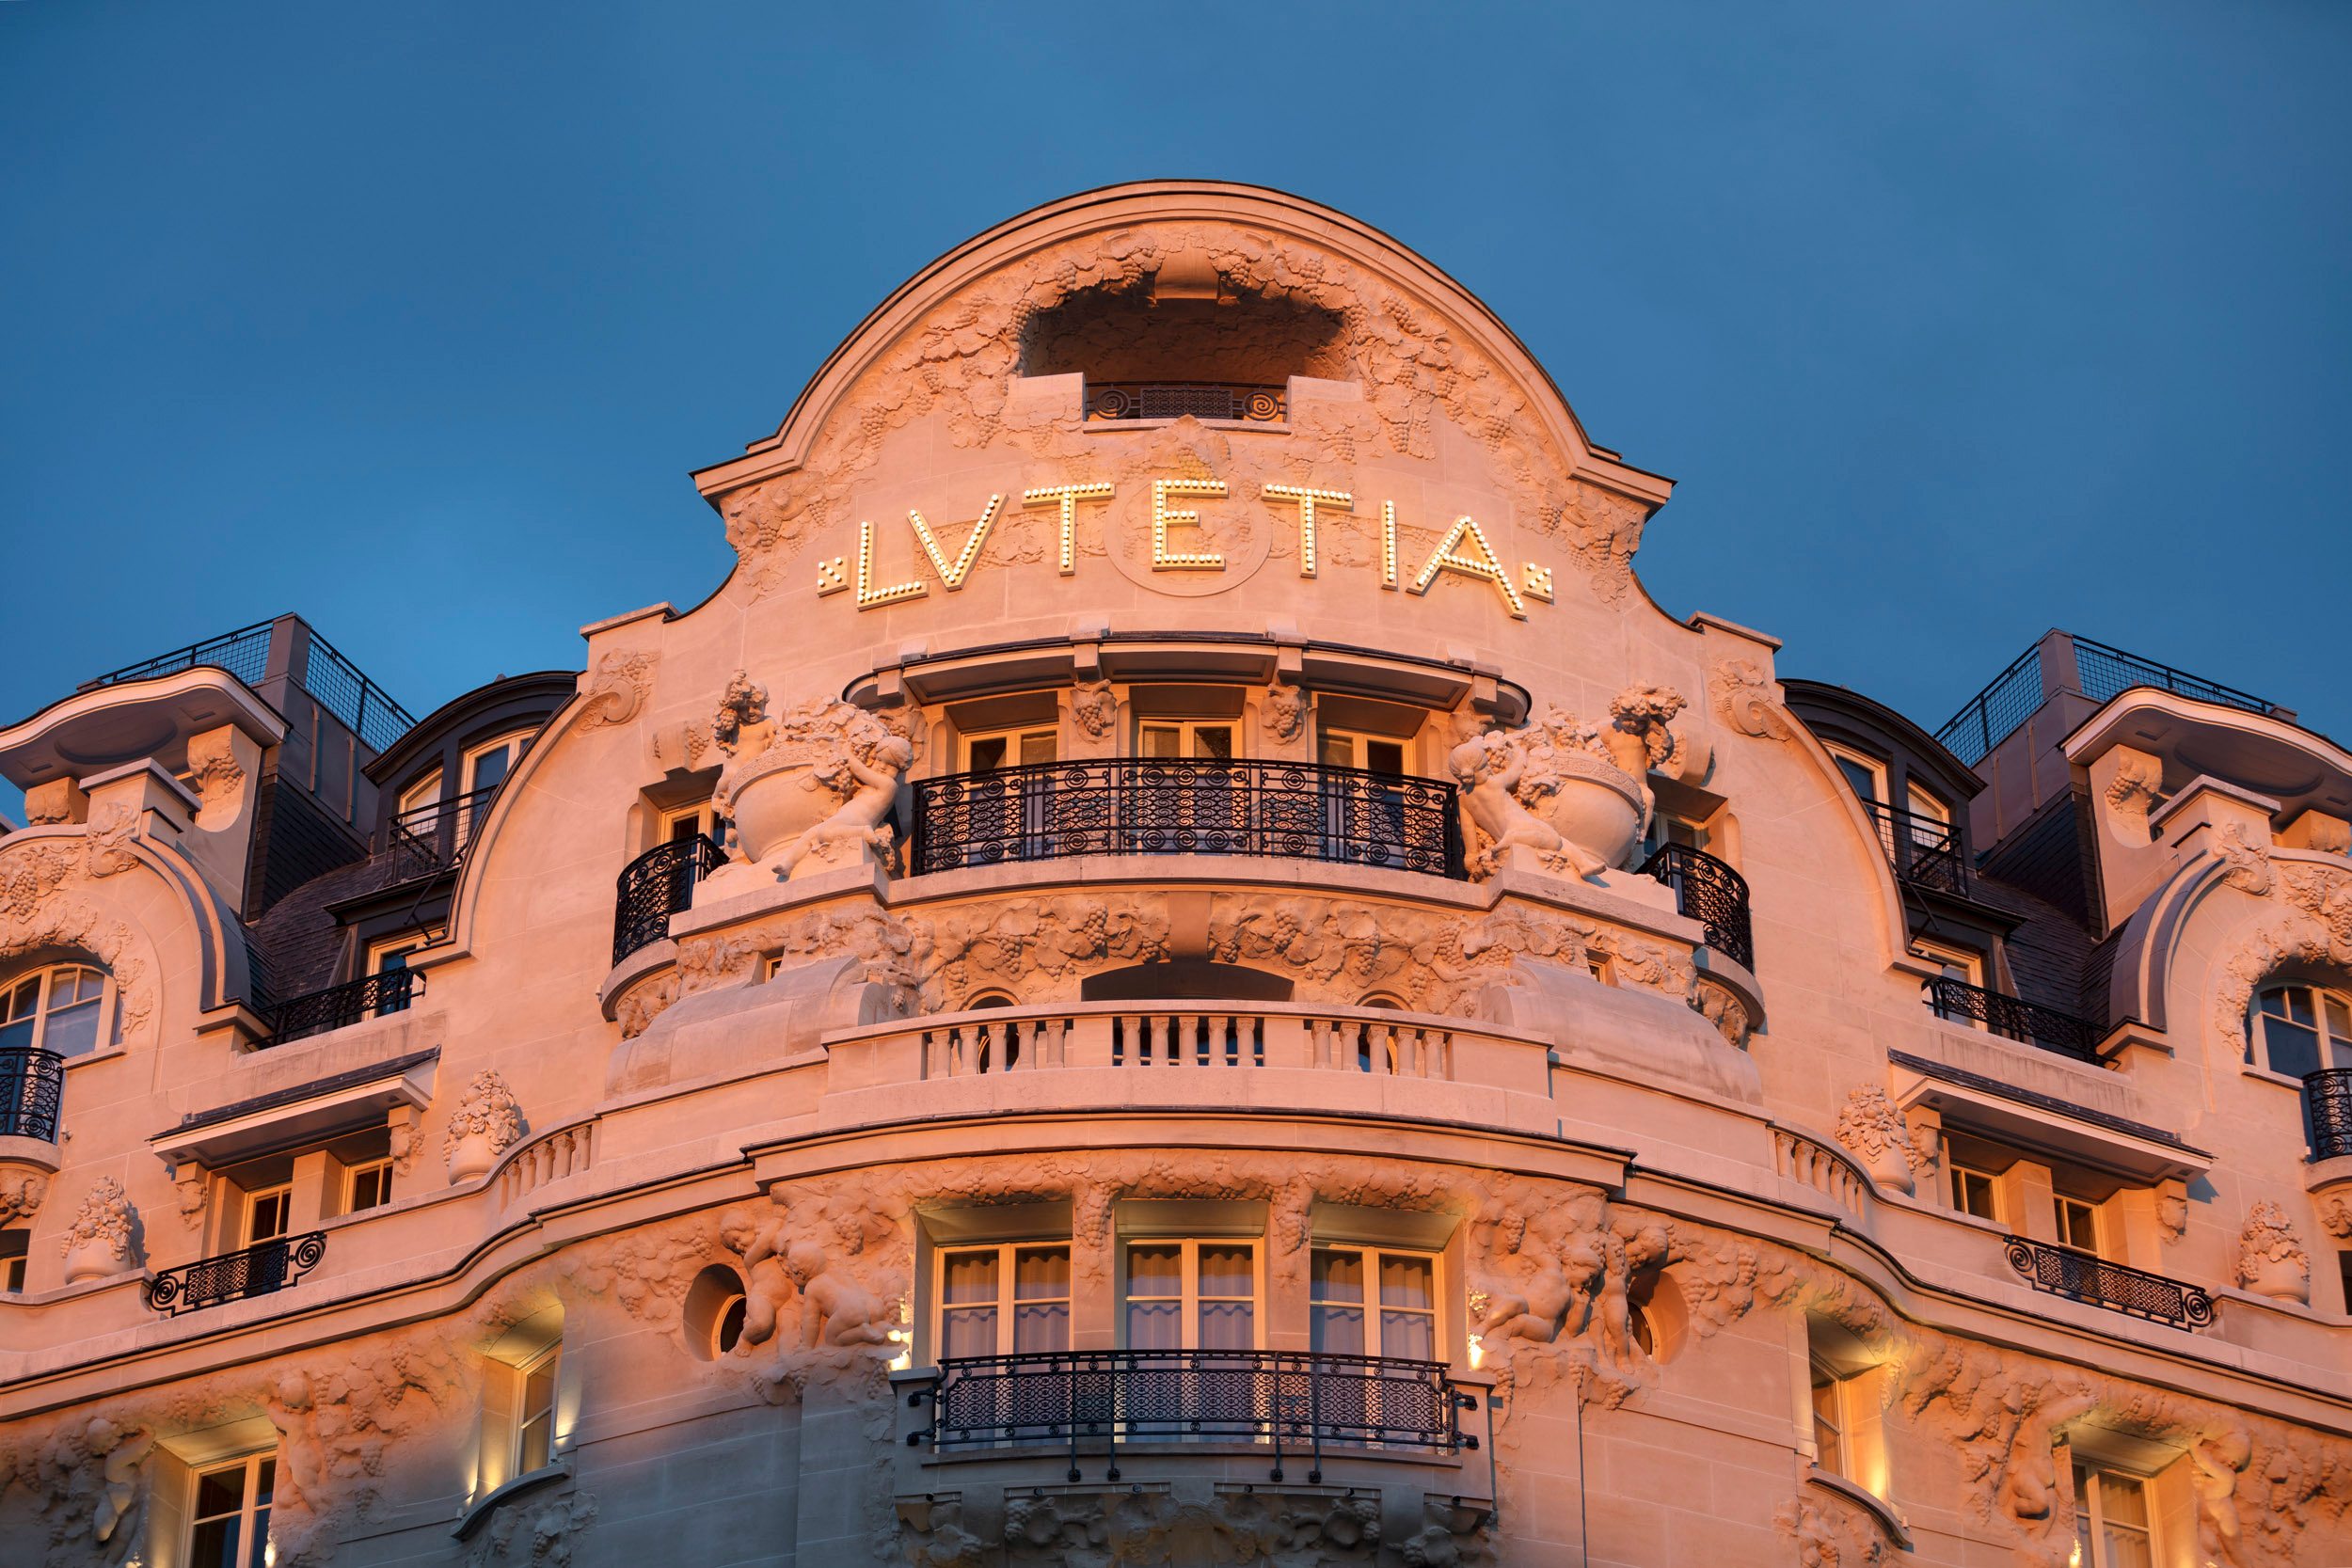 Quel hôtel parisien a réçu la certification palace?